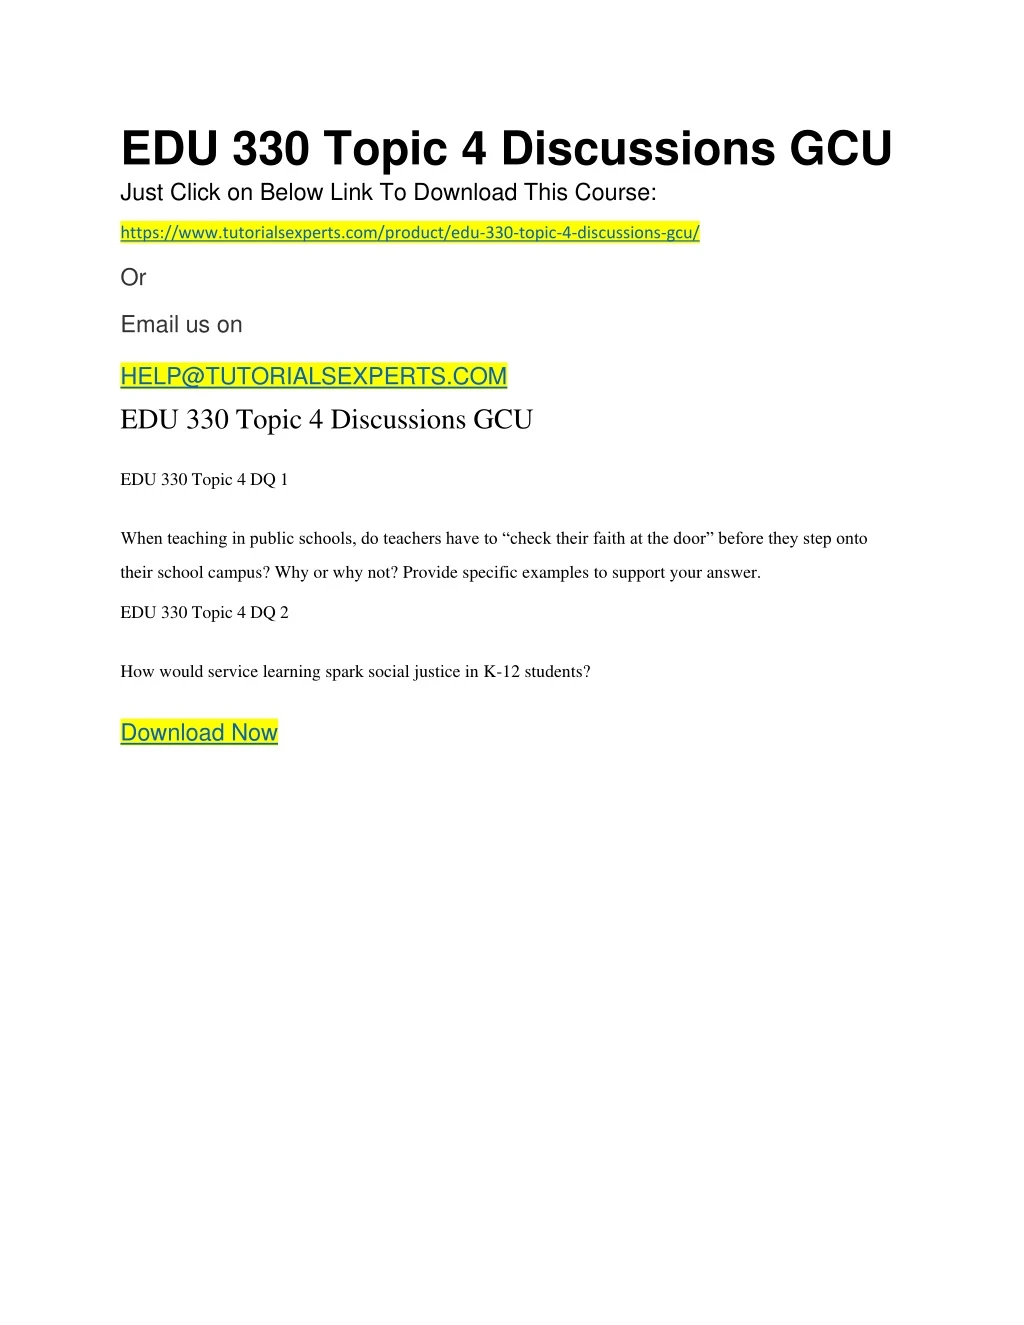 edu 330 topic 4 discussions gcu just click